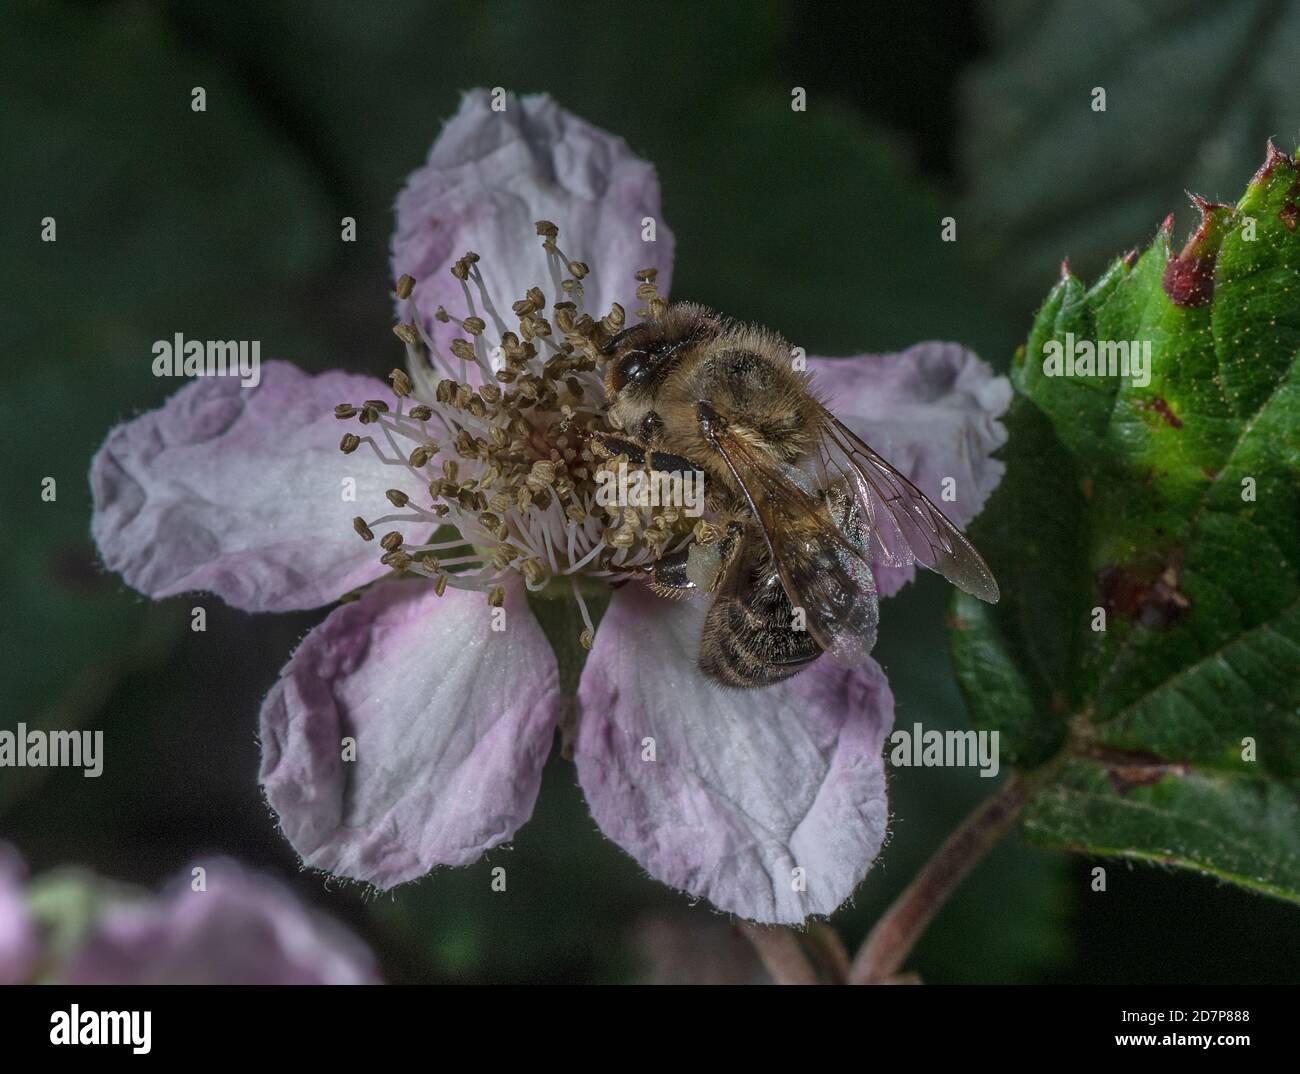 Europäische dunkle Biene, APIs mellifera mellifera, eine Unterart der westlichen Honigbiene, die sich von rosa Bramble-Blüten ernährt. New Forest. Stockfoto